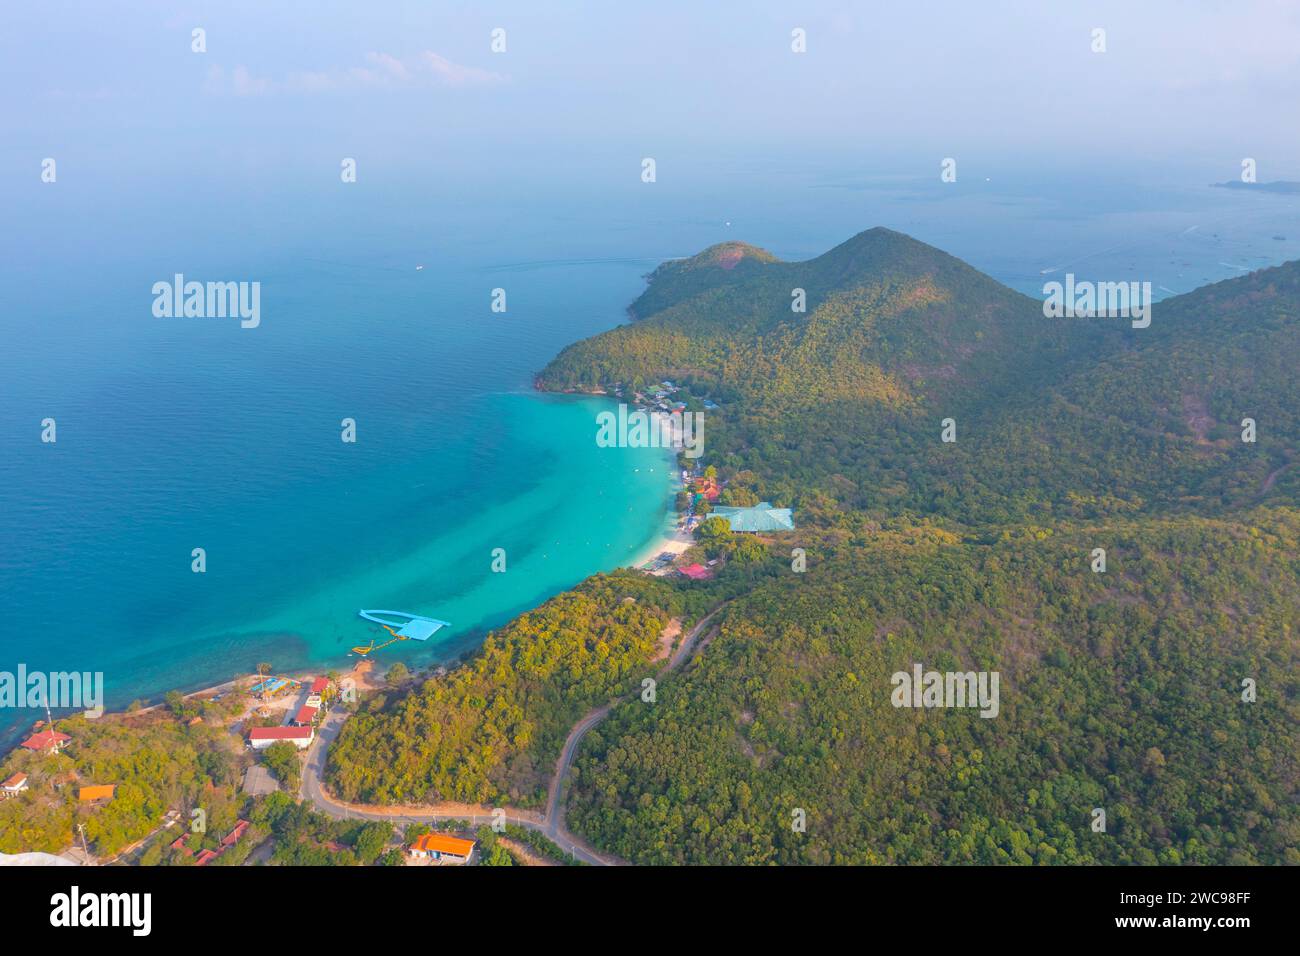 Isola tropicale con una baia di sabbia azzurra e un molo e un villaggio sulla spiaggia circondato da strade da foreste esotiche, alberi e colline, vista aerea. Foto Stock